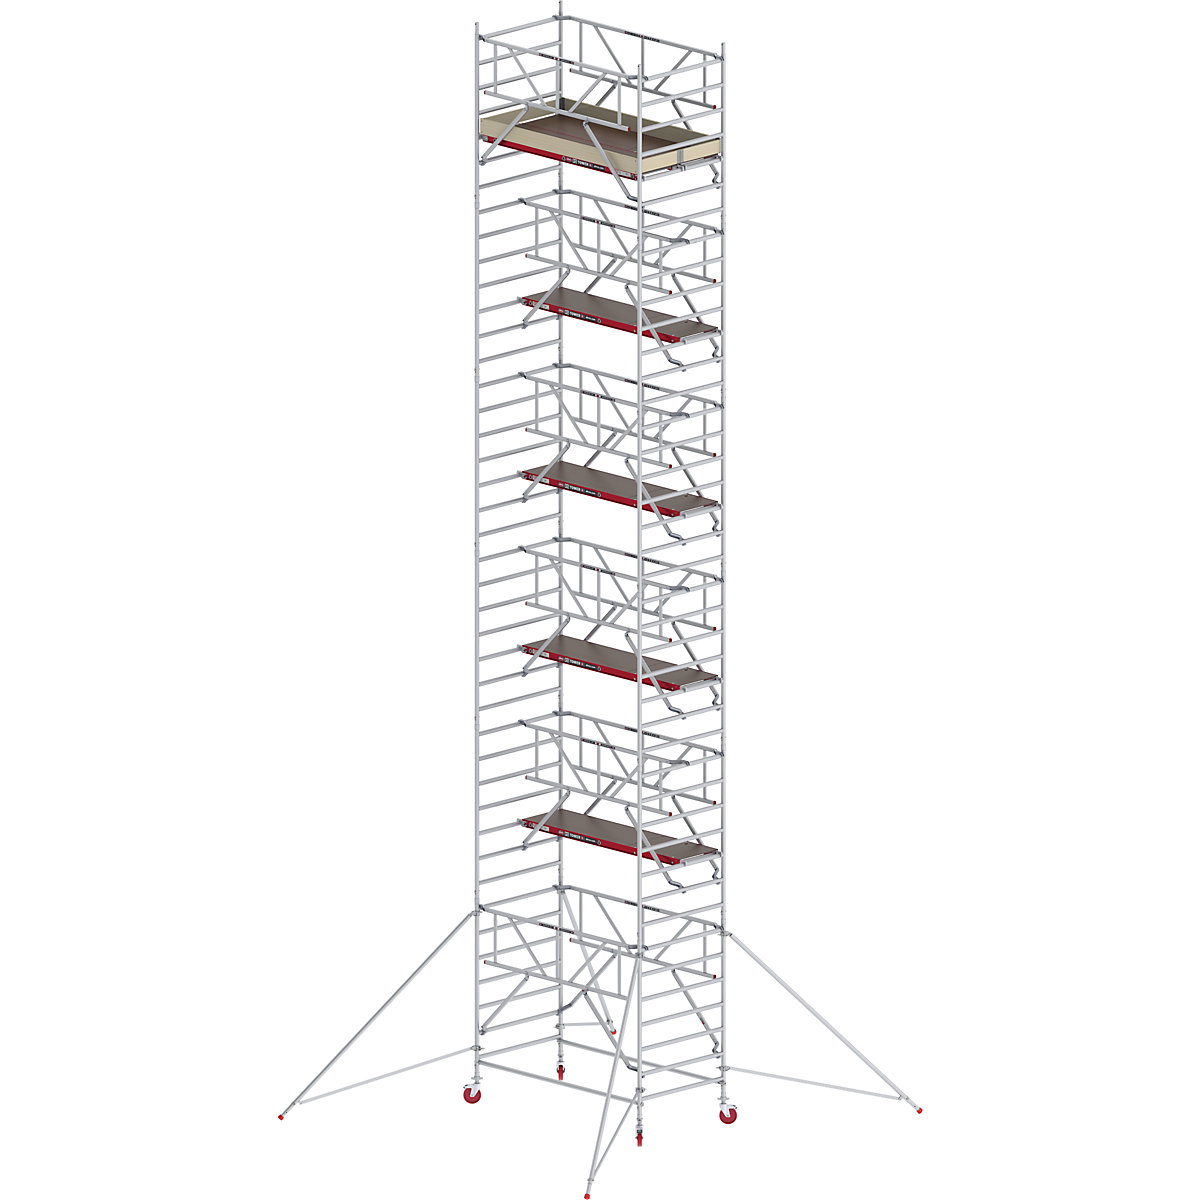 Schelă mobilă RS TOWER 42 lată cu Safe-Quick® – Altrex, platformă din lemn, lungime 2,45 m, înălțime de lucru 13,2 m-1